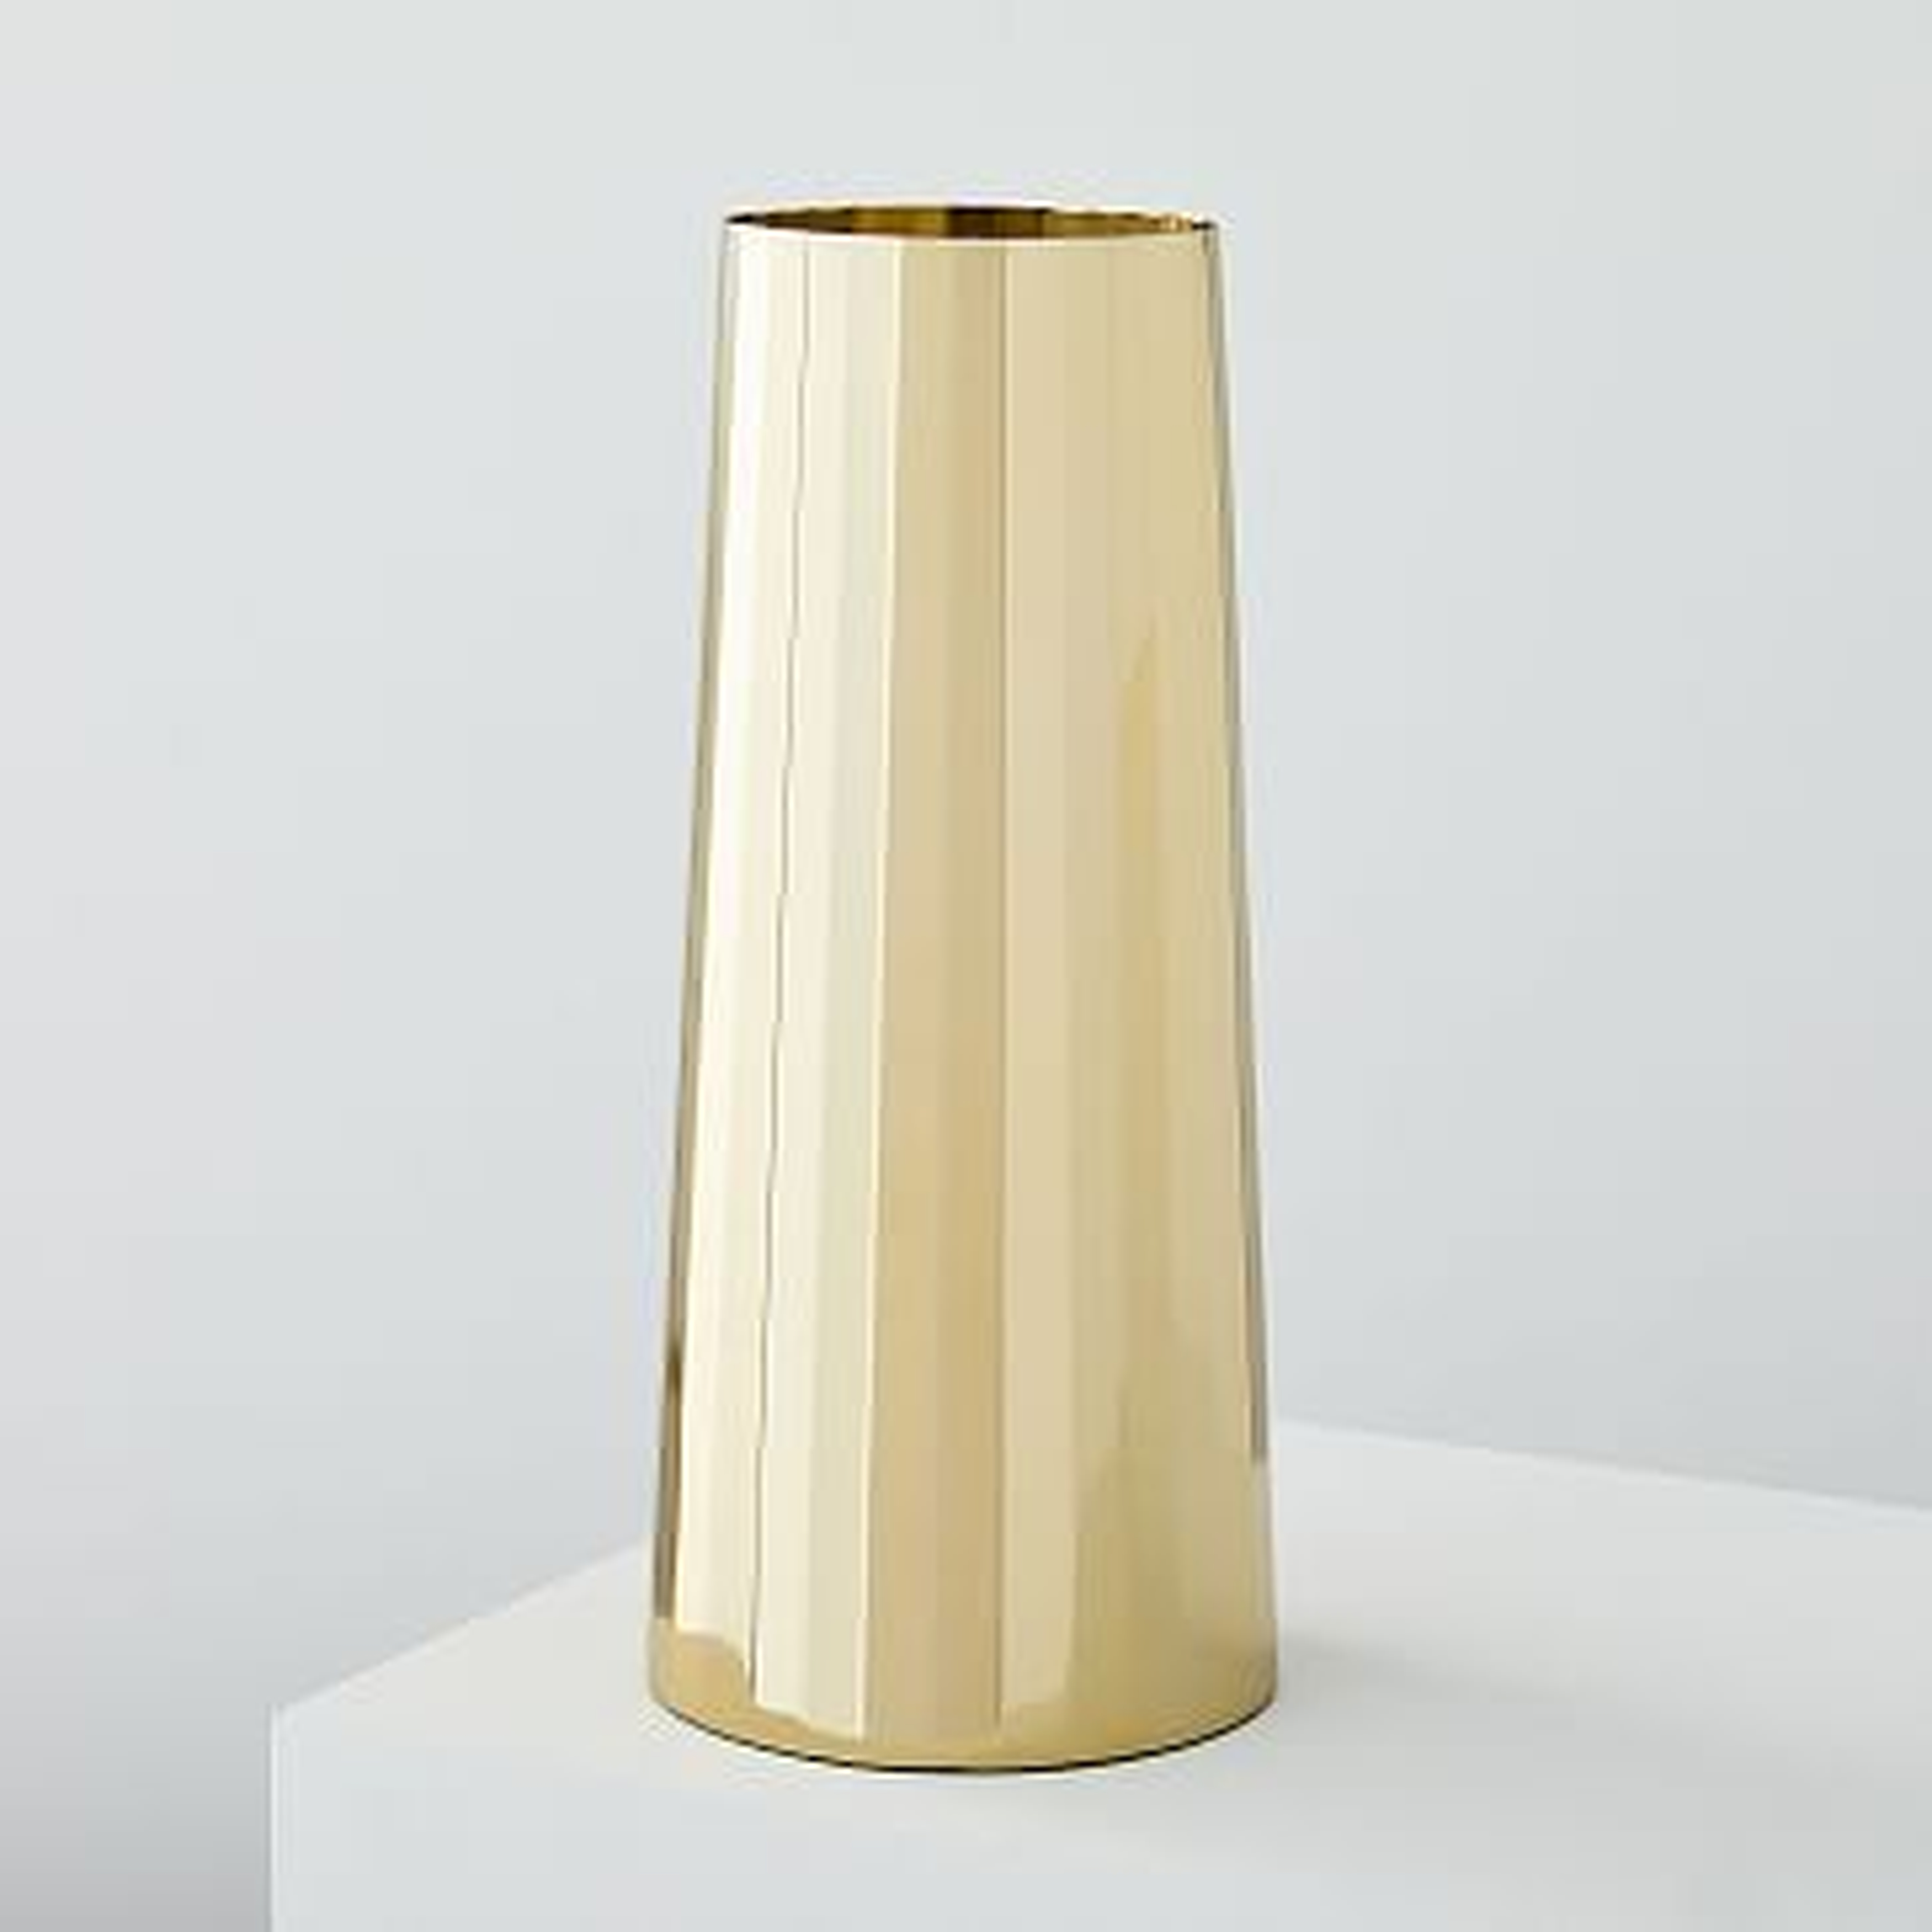 Foundation Brass Vases , Large - West Elm